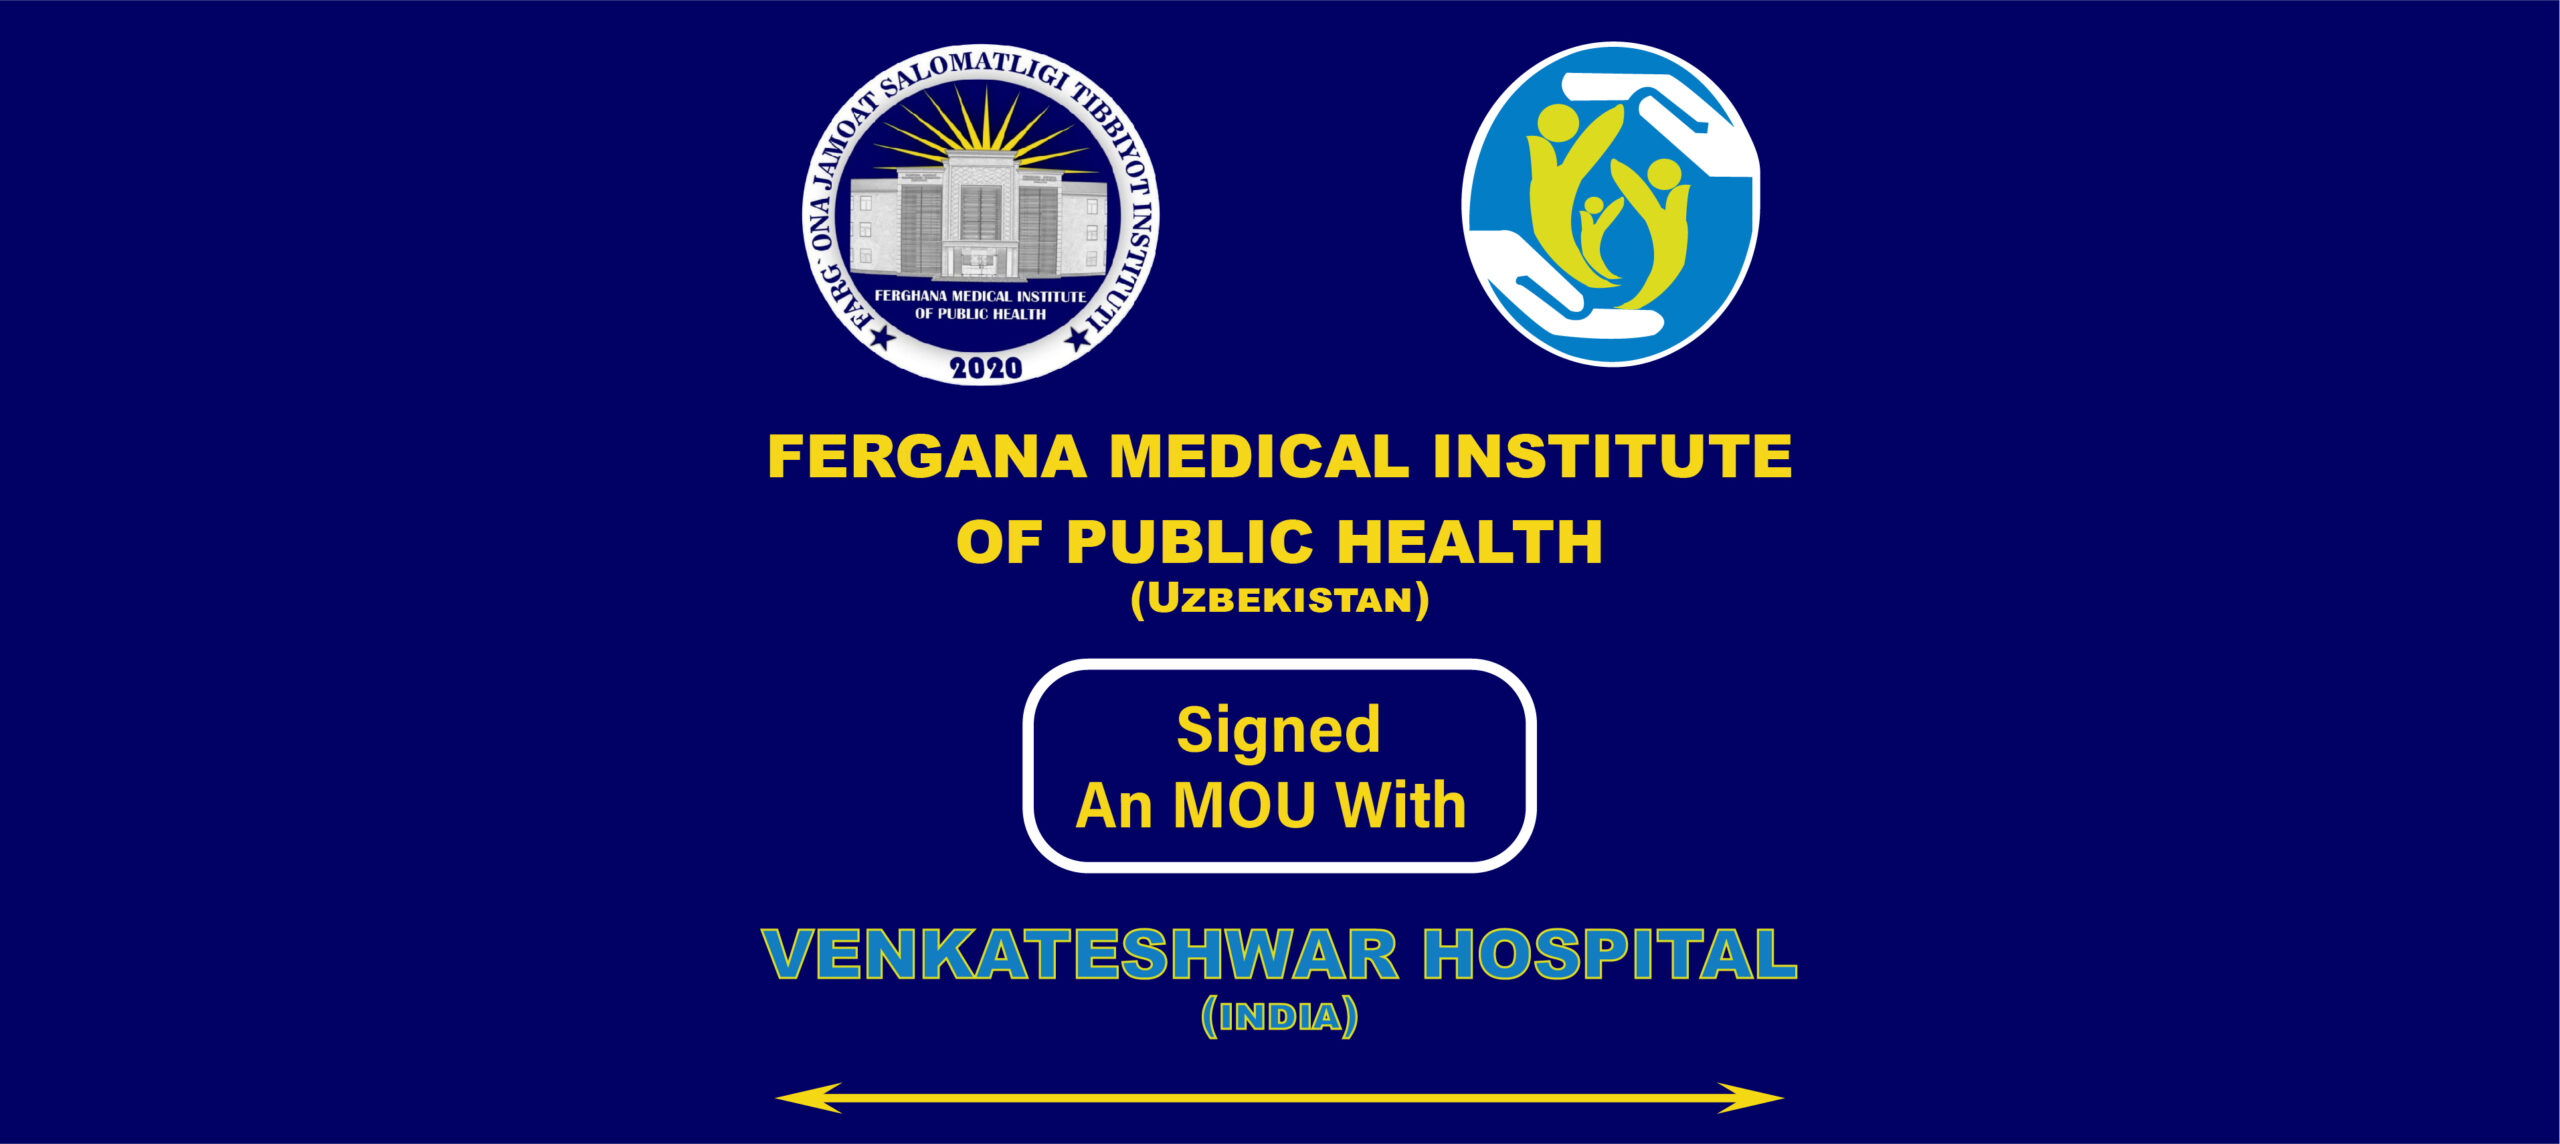 Fergana Medical Institute of Public Health signed MOU with Venkateshwar hospital